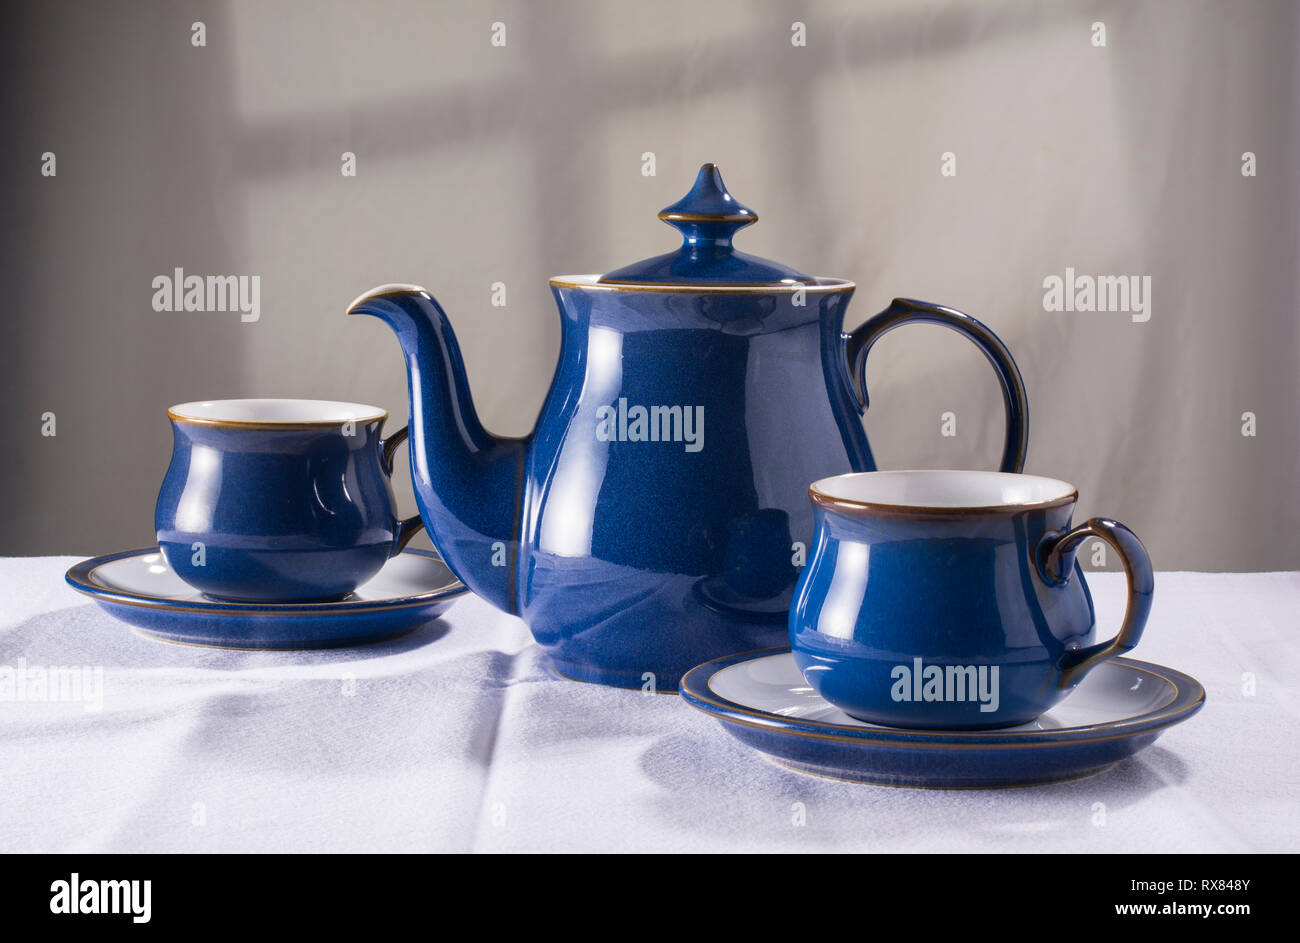 Altmodische Teekanne und passenden Tassen und Untertassen Stockfotografie -  Alamy